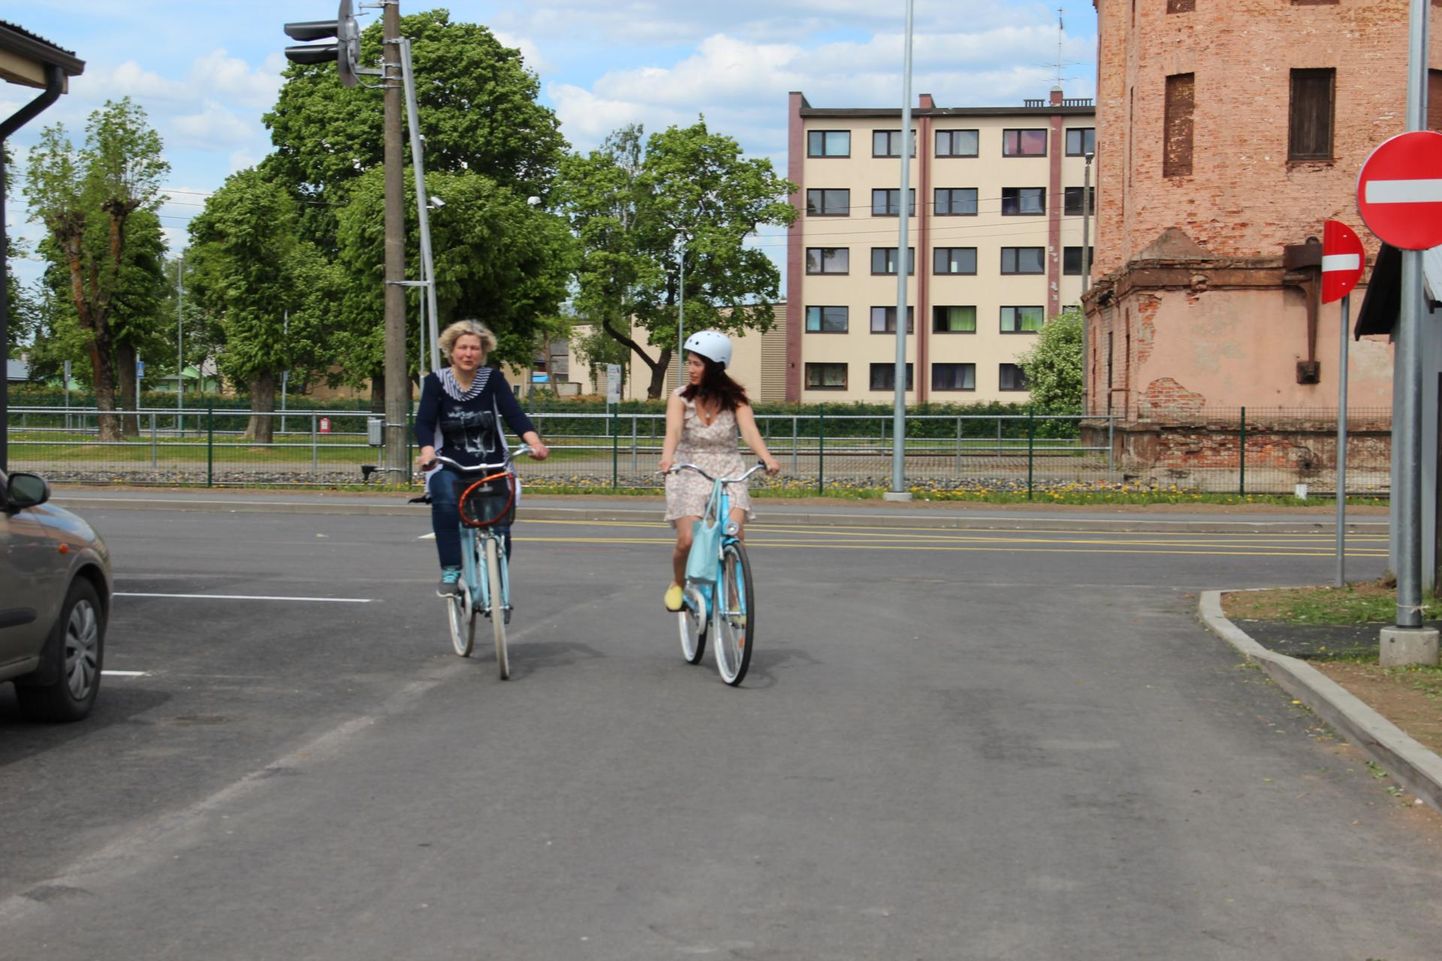 Tapa pitsakohviku üks omanikke Marika Tali (vasakul) ja OÜ Luureretked juht Merili Vipper hakkavad Tapal rentima jalgrattaid.